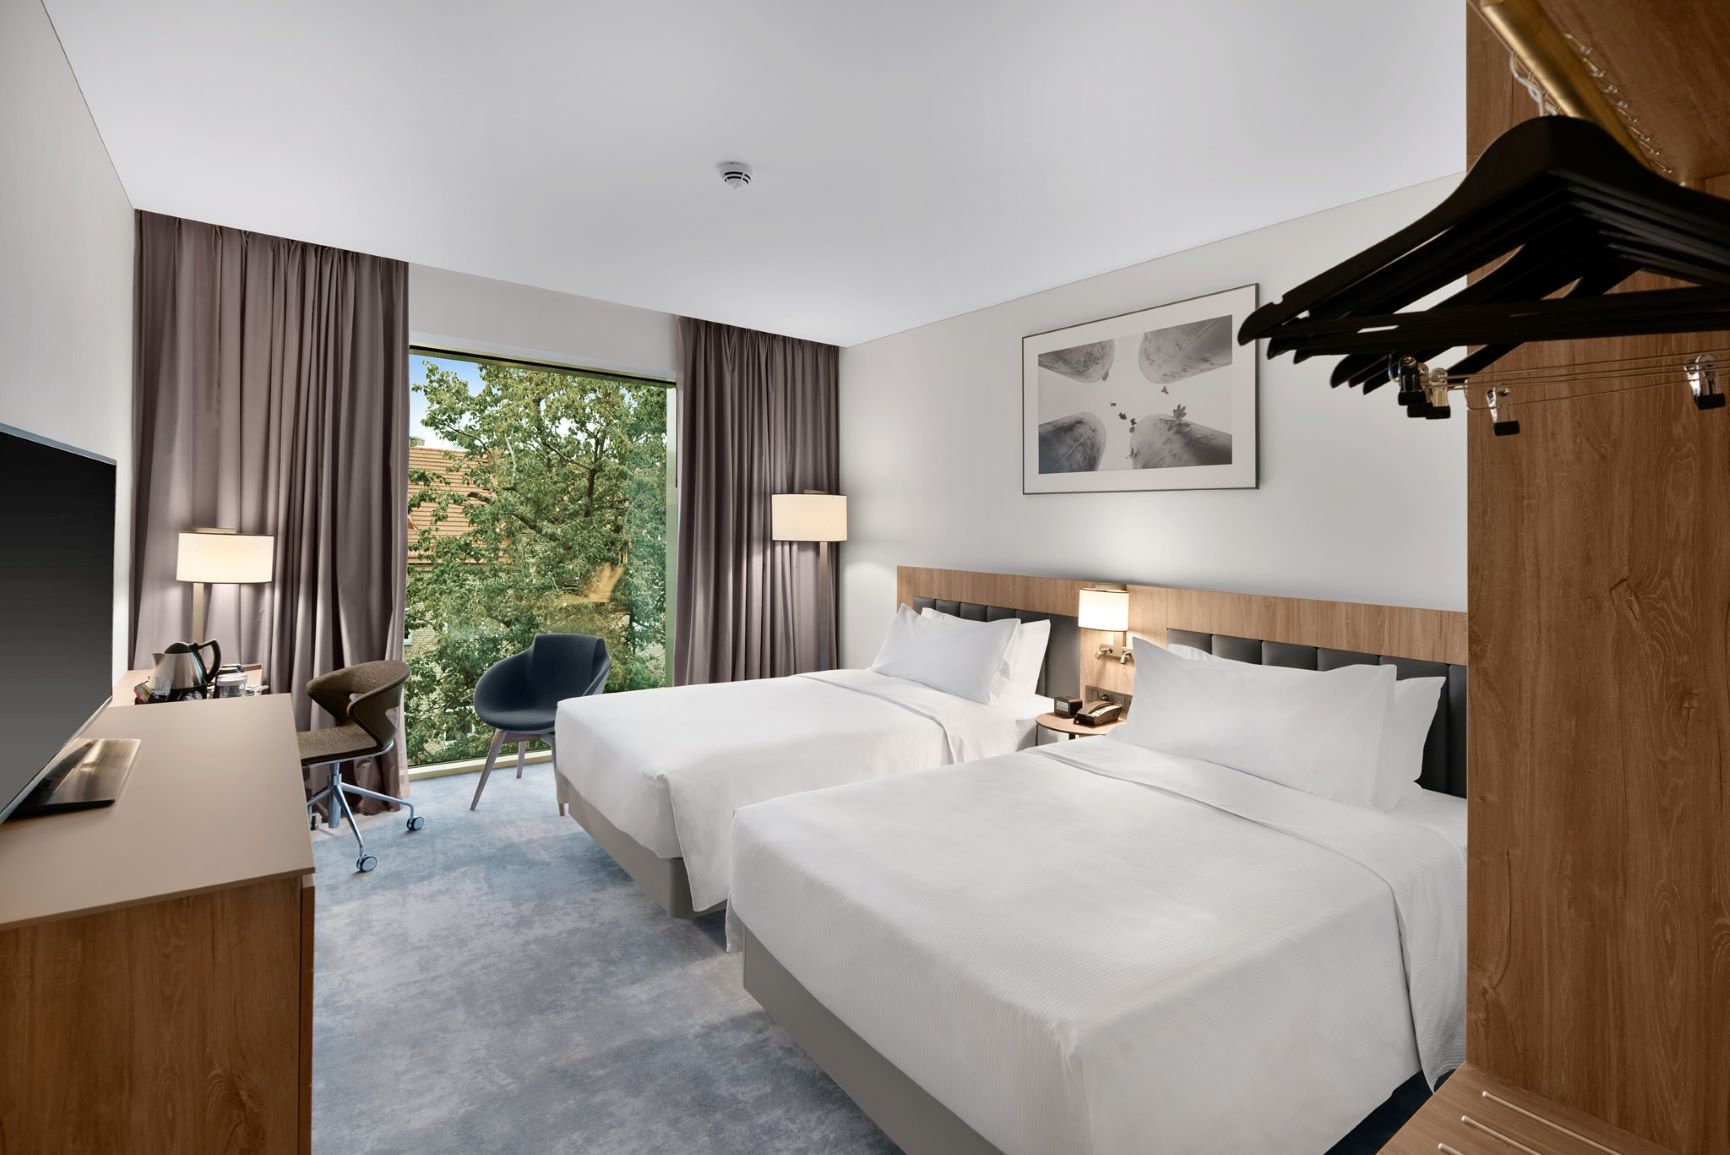 standard bedroom 1 - hotel hilton garden inn vilnius city centre - vilnius, lithuania